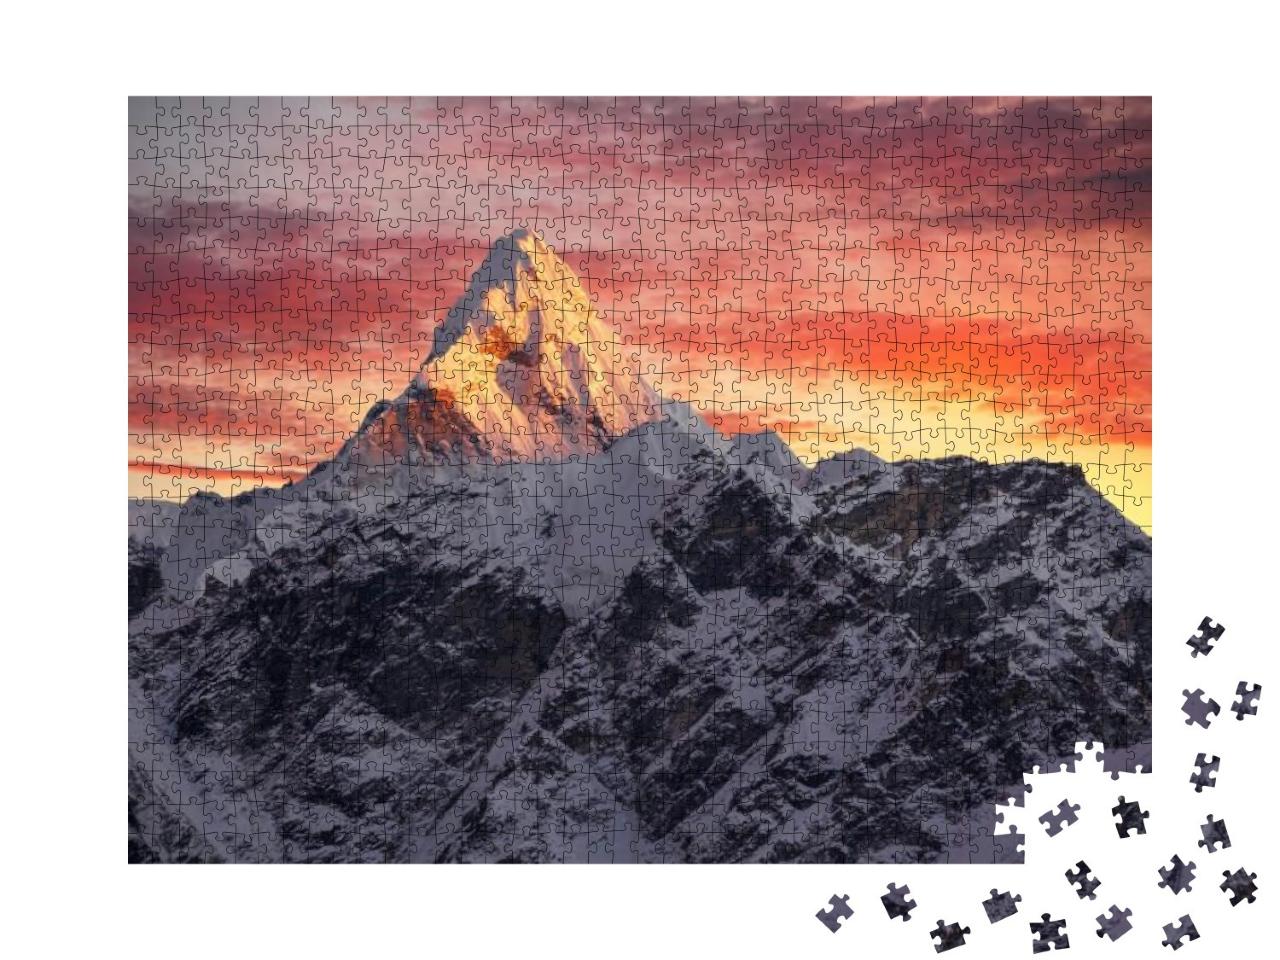 Puzzle 1000 Teile „Ama Dablam Gipfel im Sonnenuntergang, Nepal, Himalaya“